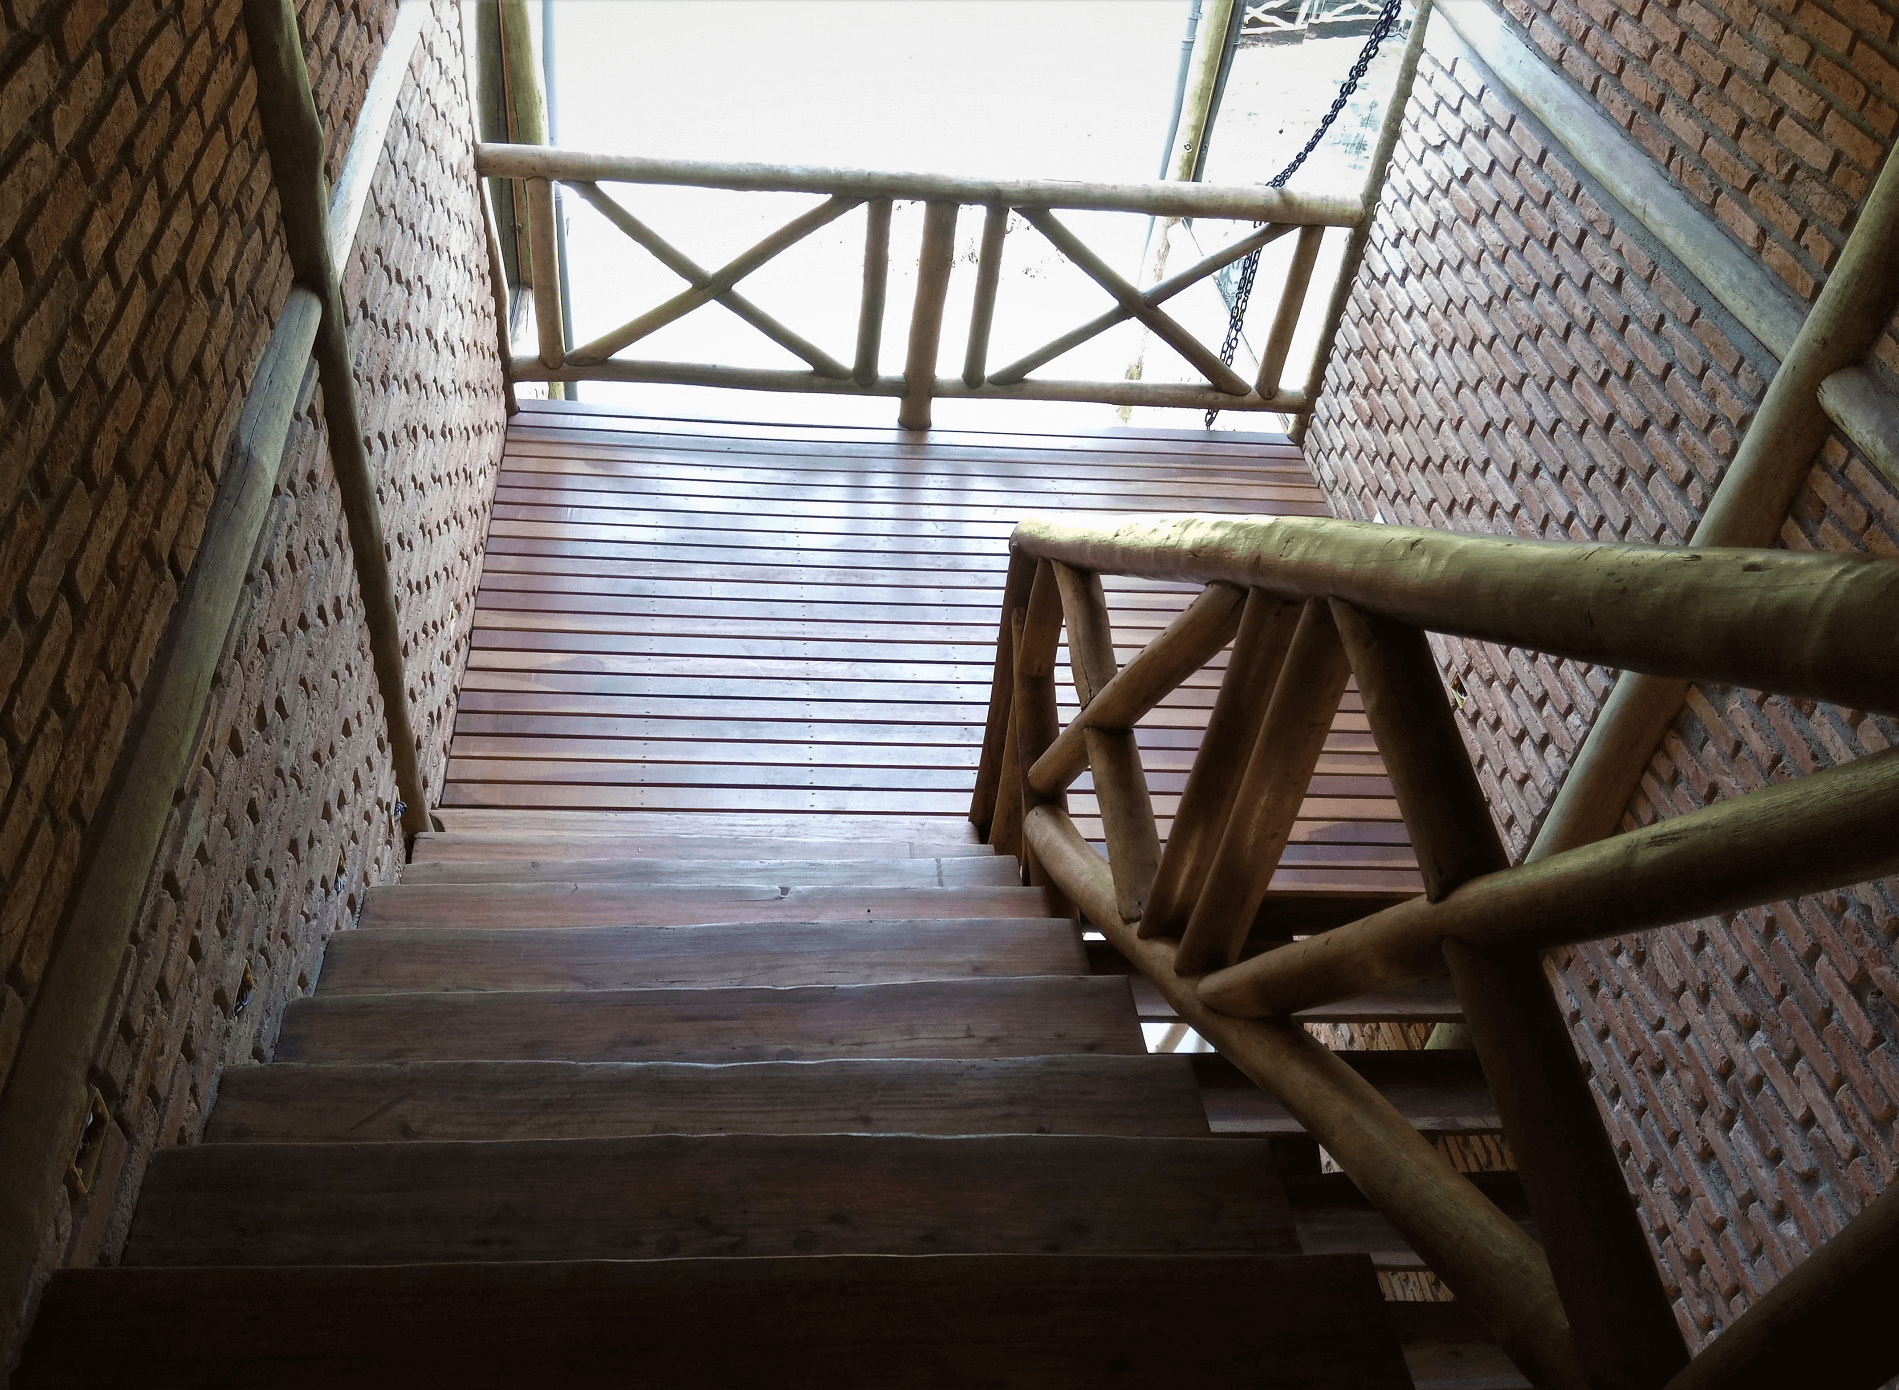 Os acessos internos entre os pavimentos são feitos pelas escadas confeccionadas com ½ cana de eucalipto tratado. No corrimão foi usado eucalipto tratado e nos patamares de descanso, deck de Cumaru. A caixa da escada recebeu vidros e paredes de tijolo de demolição.